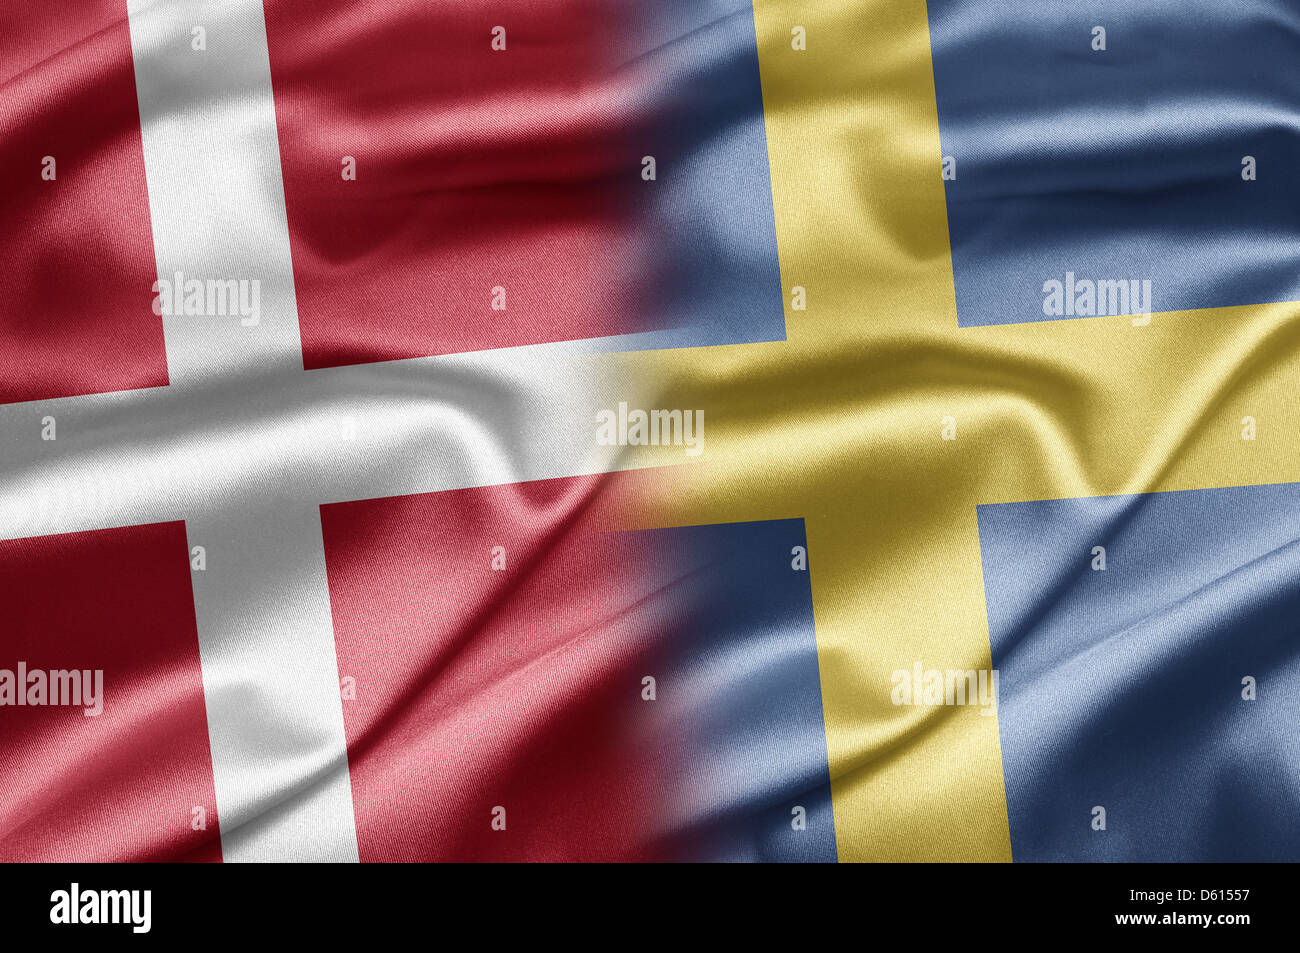 флаги скандинавских стран фото с названиями